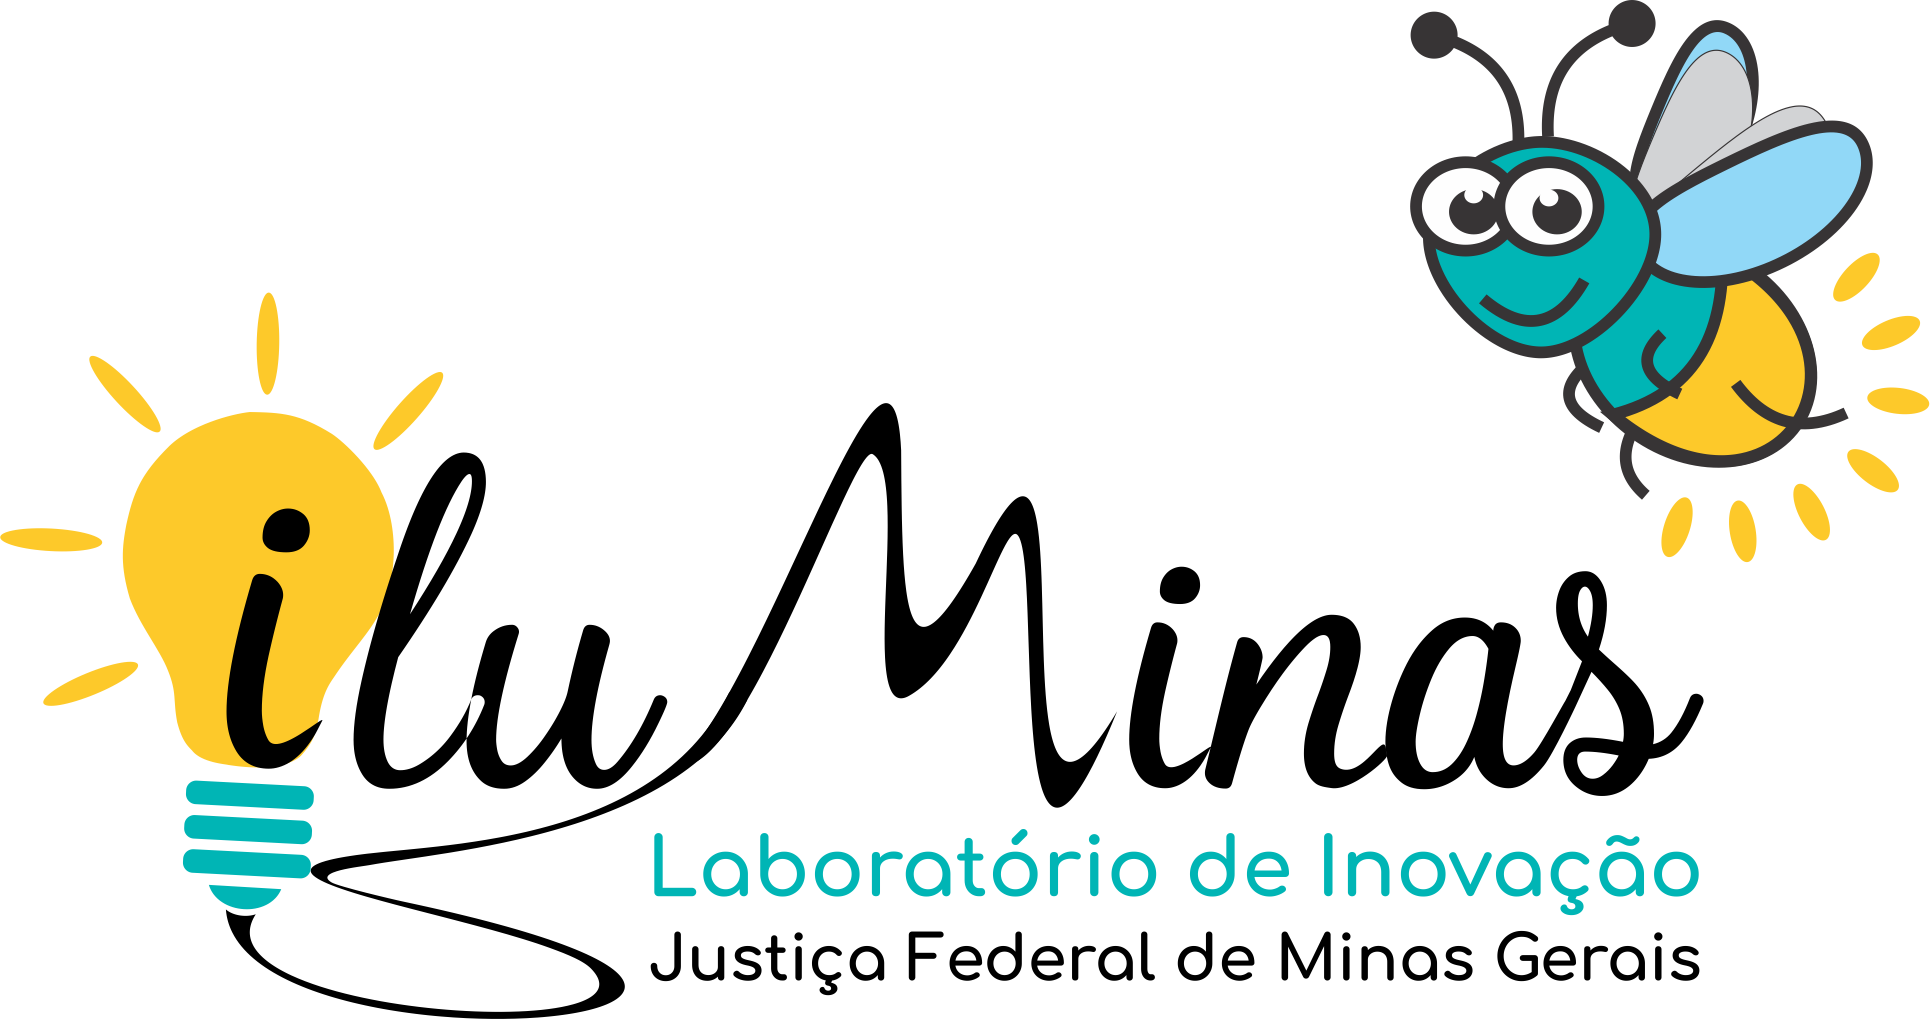 Iluminas - Laboratório de inovação